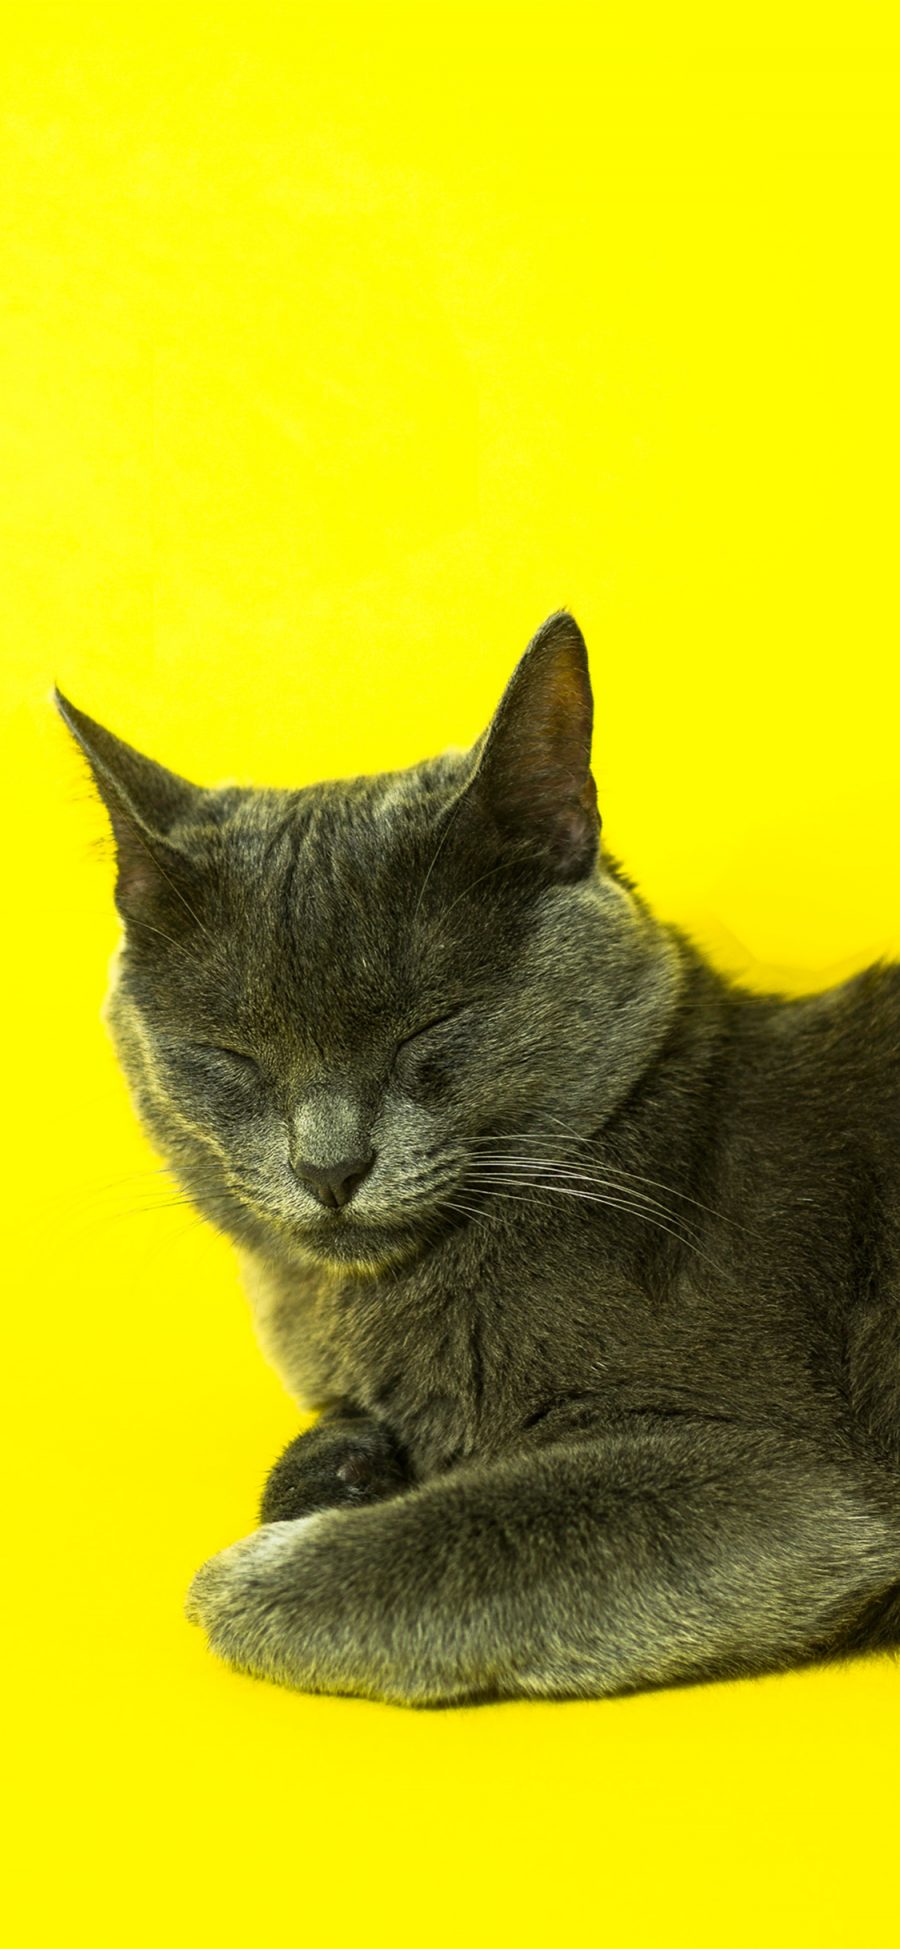 [2436×1125]黄色背景 猫咪 蓝猫 宠物猫 苹果手机壁纸图片